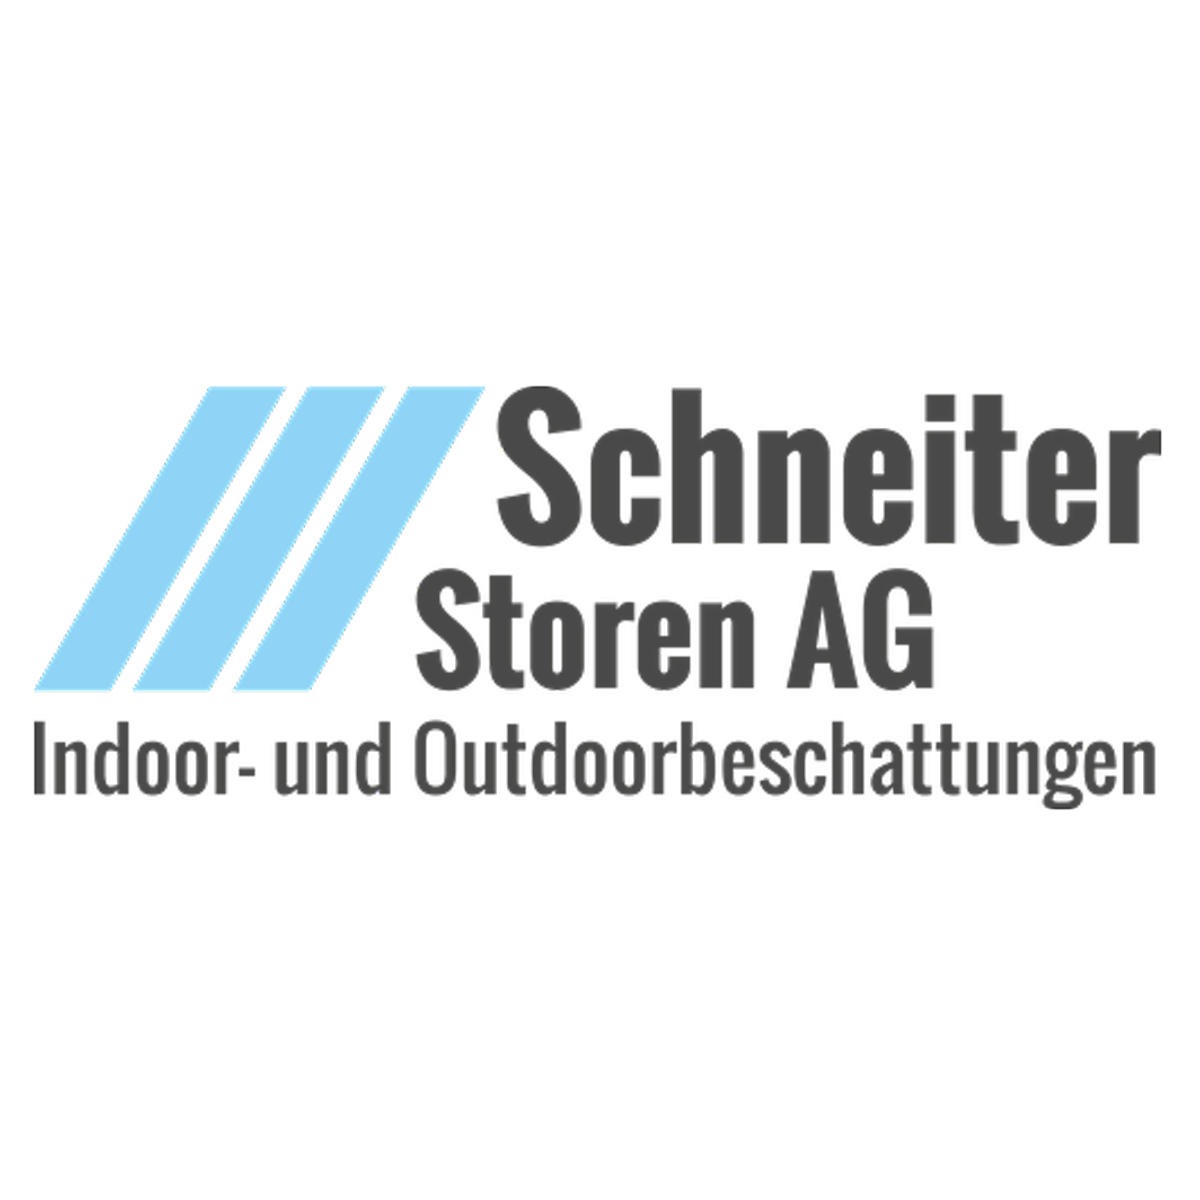 Schneiter Storen AG Logo